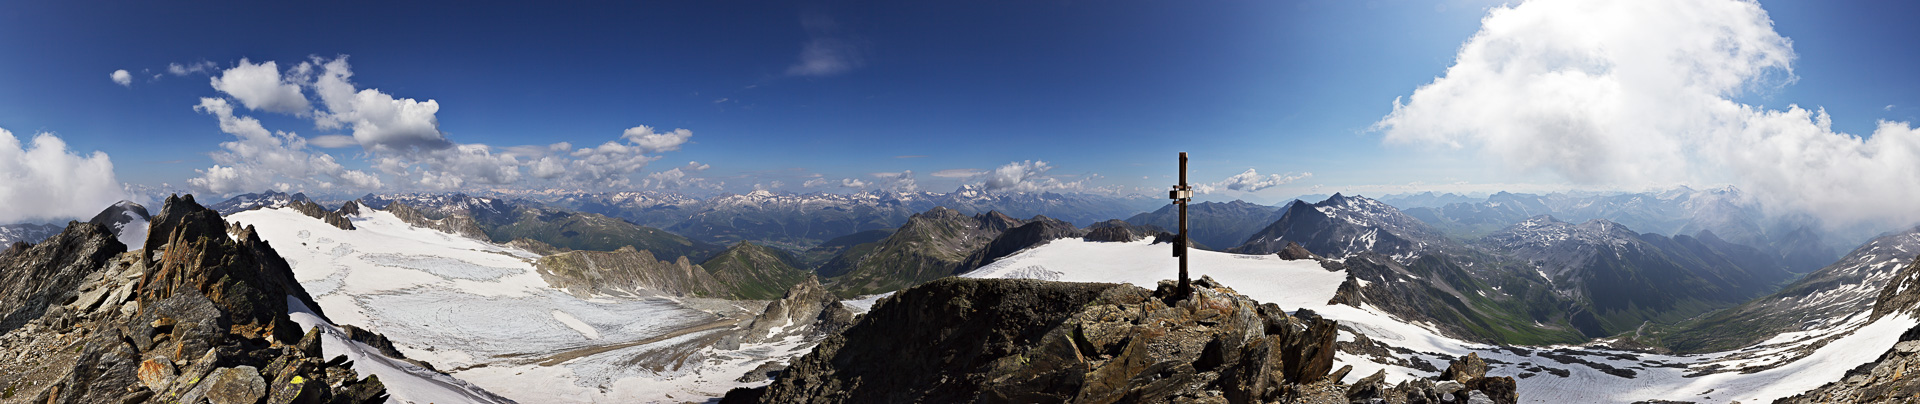 Wunderbarer Gipfel mit prächtigem Panorama: Tödi, Terri, Rheinwaldhorn. Der Rest versinkt im Dunst und in Wolken.